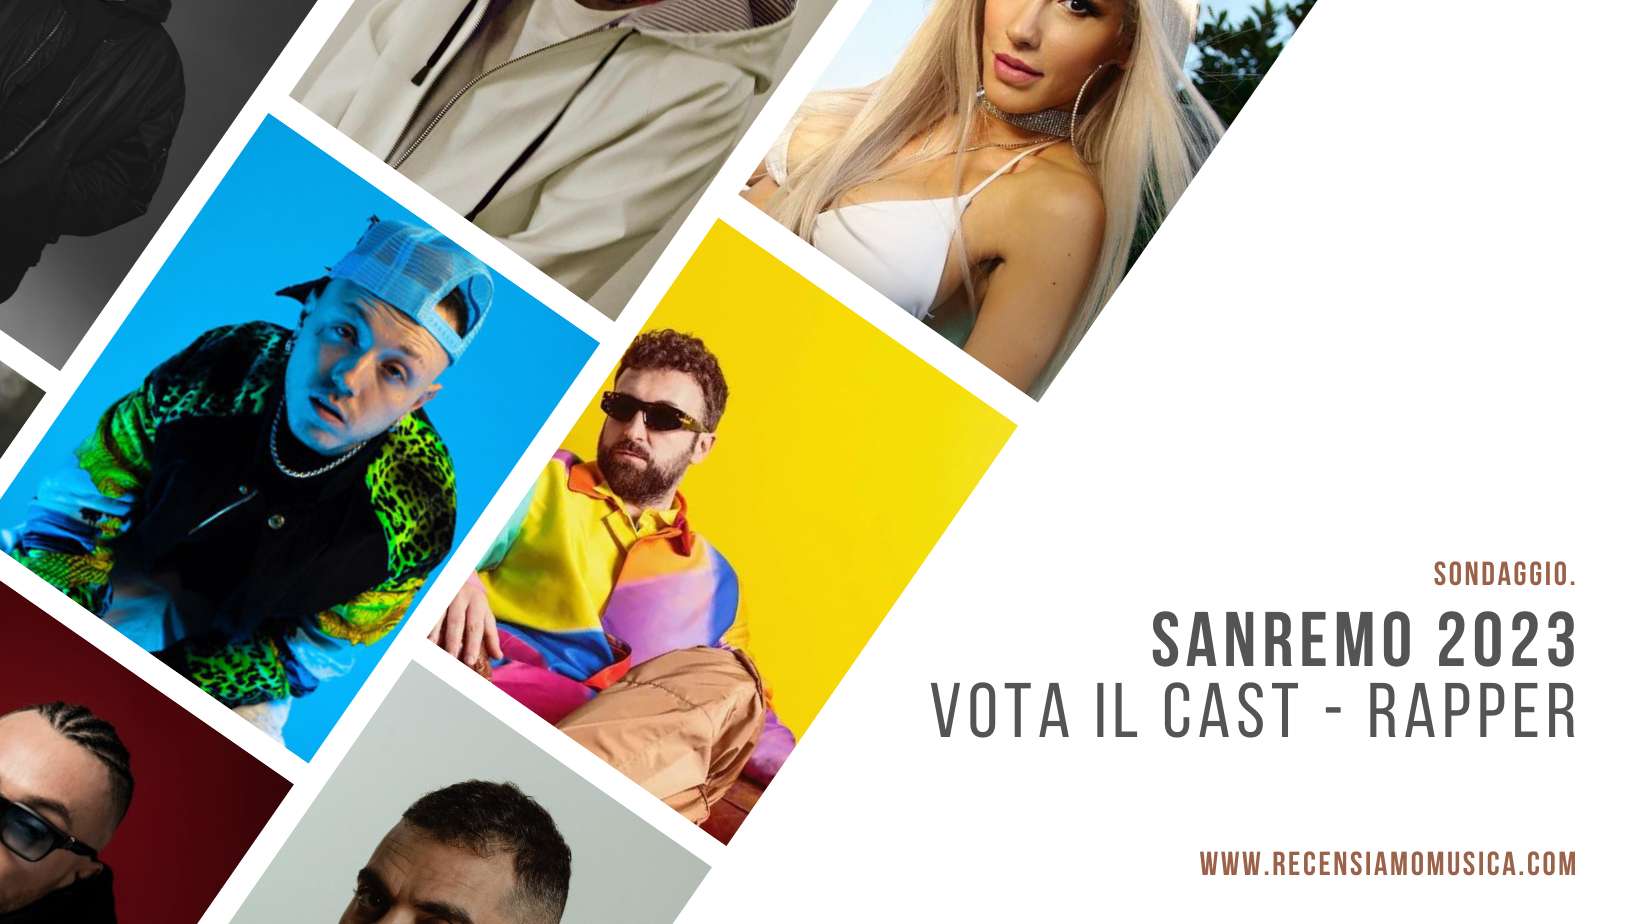 Sanremo 2023 - Sondaggio rapper